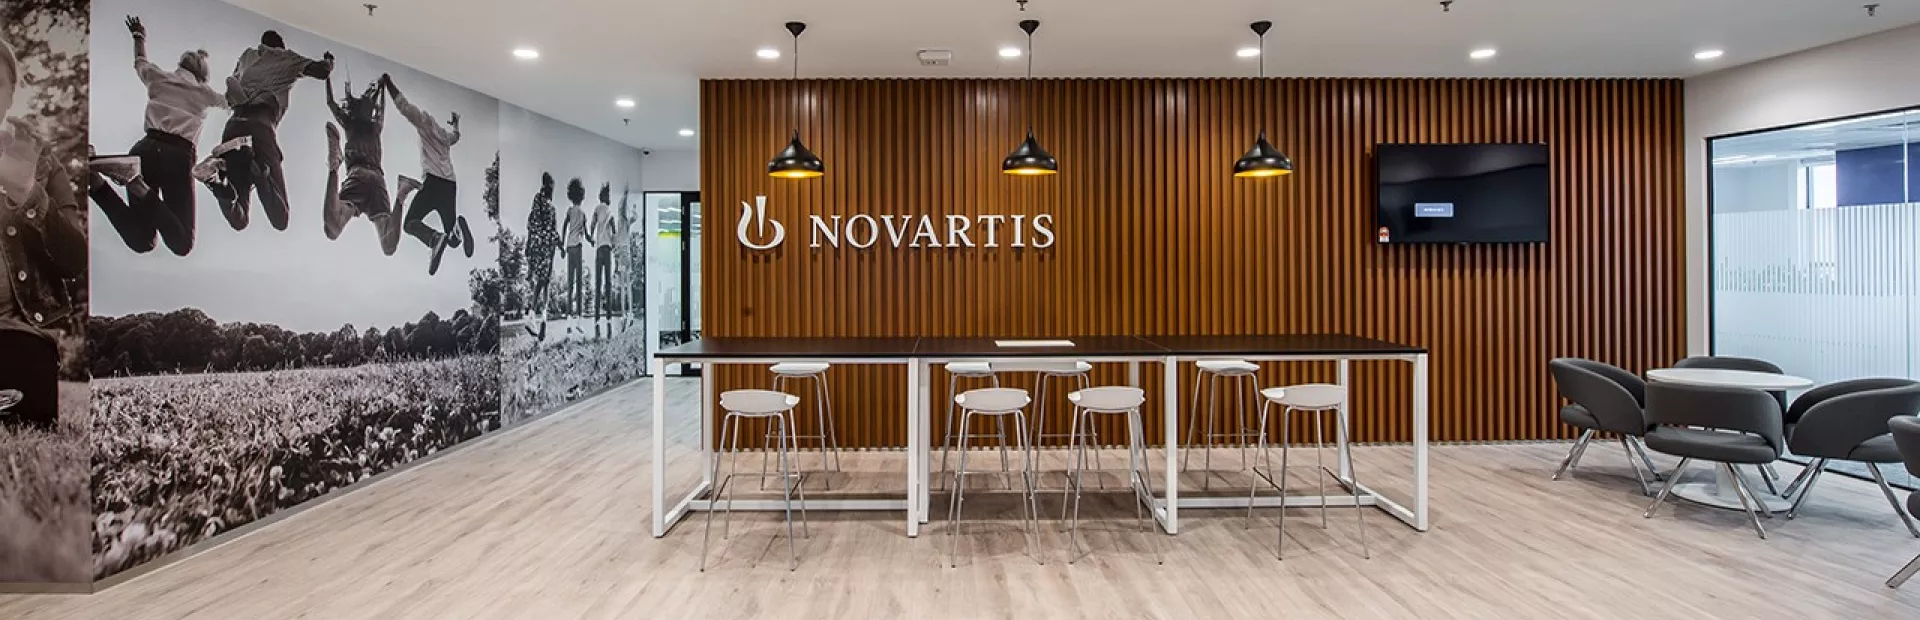 Novartis Malaysia Office